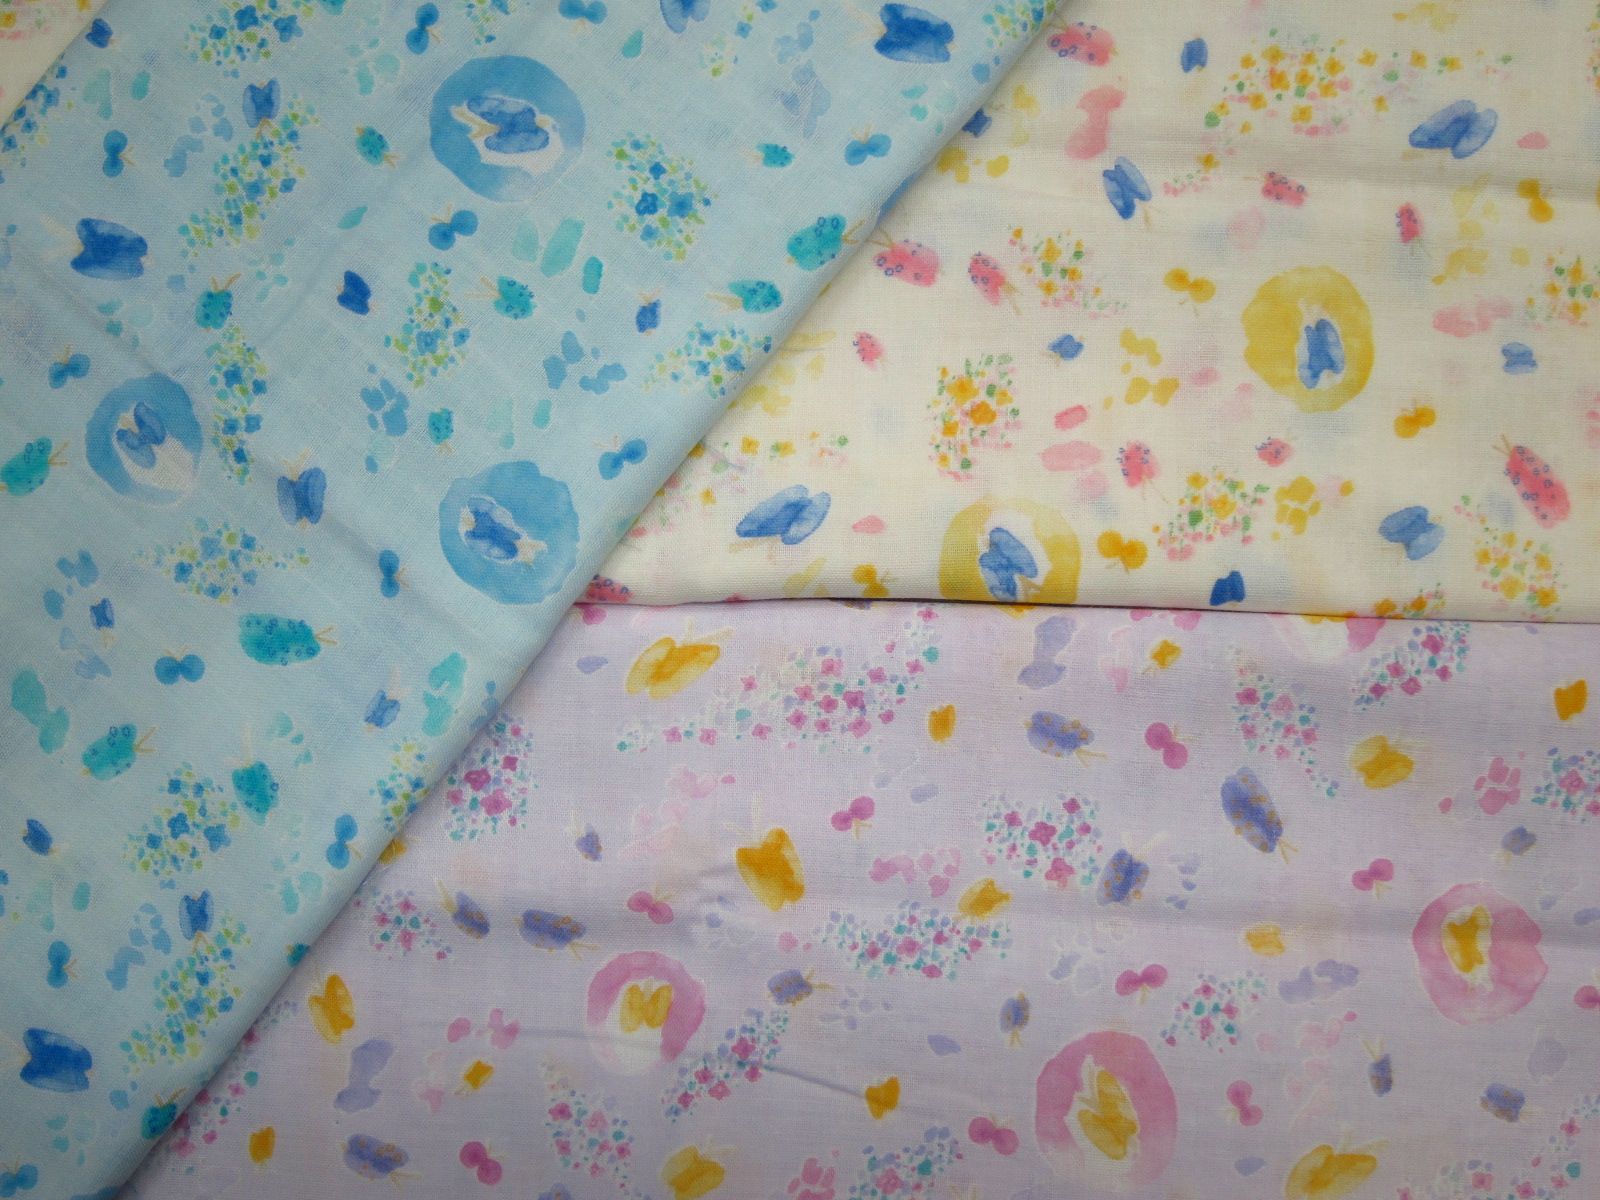 極度舒適日本進口二重紗-水彩蝴蝶花-水藍底、淺黃底、淺紫底-100%純綿、日本製造